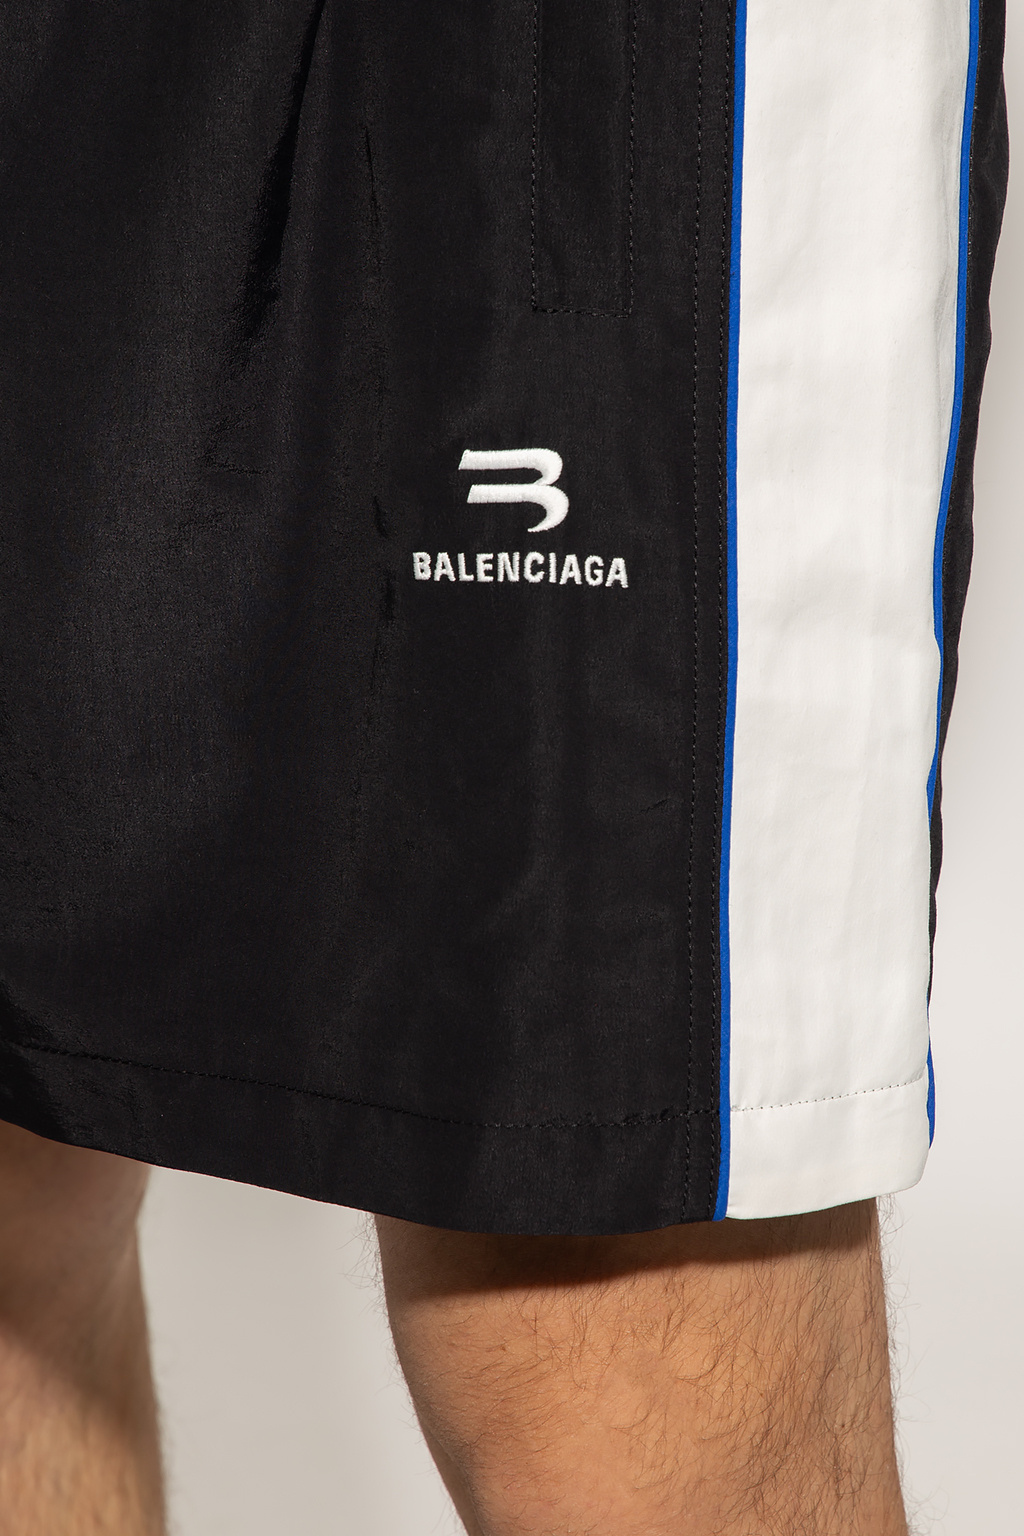 Balenciaga Basic-leggings für herbstspaziergänge